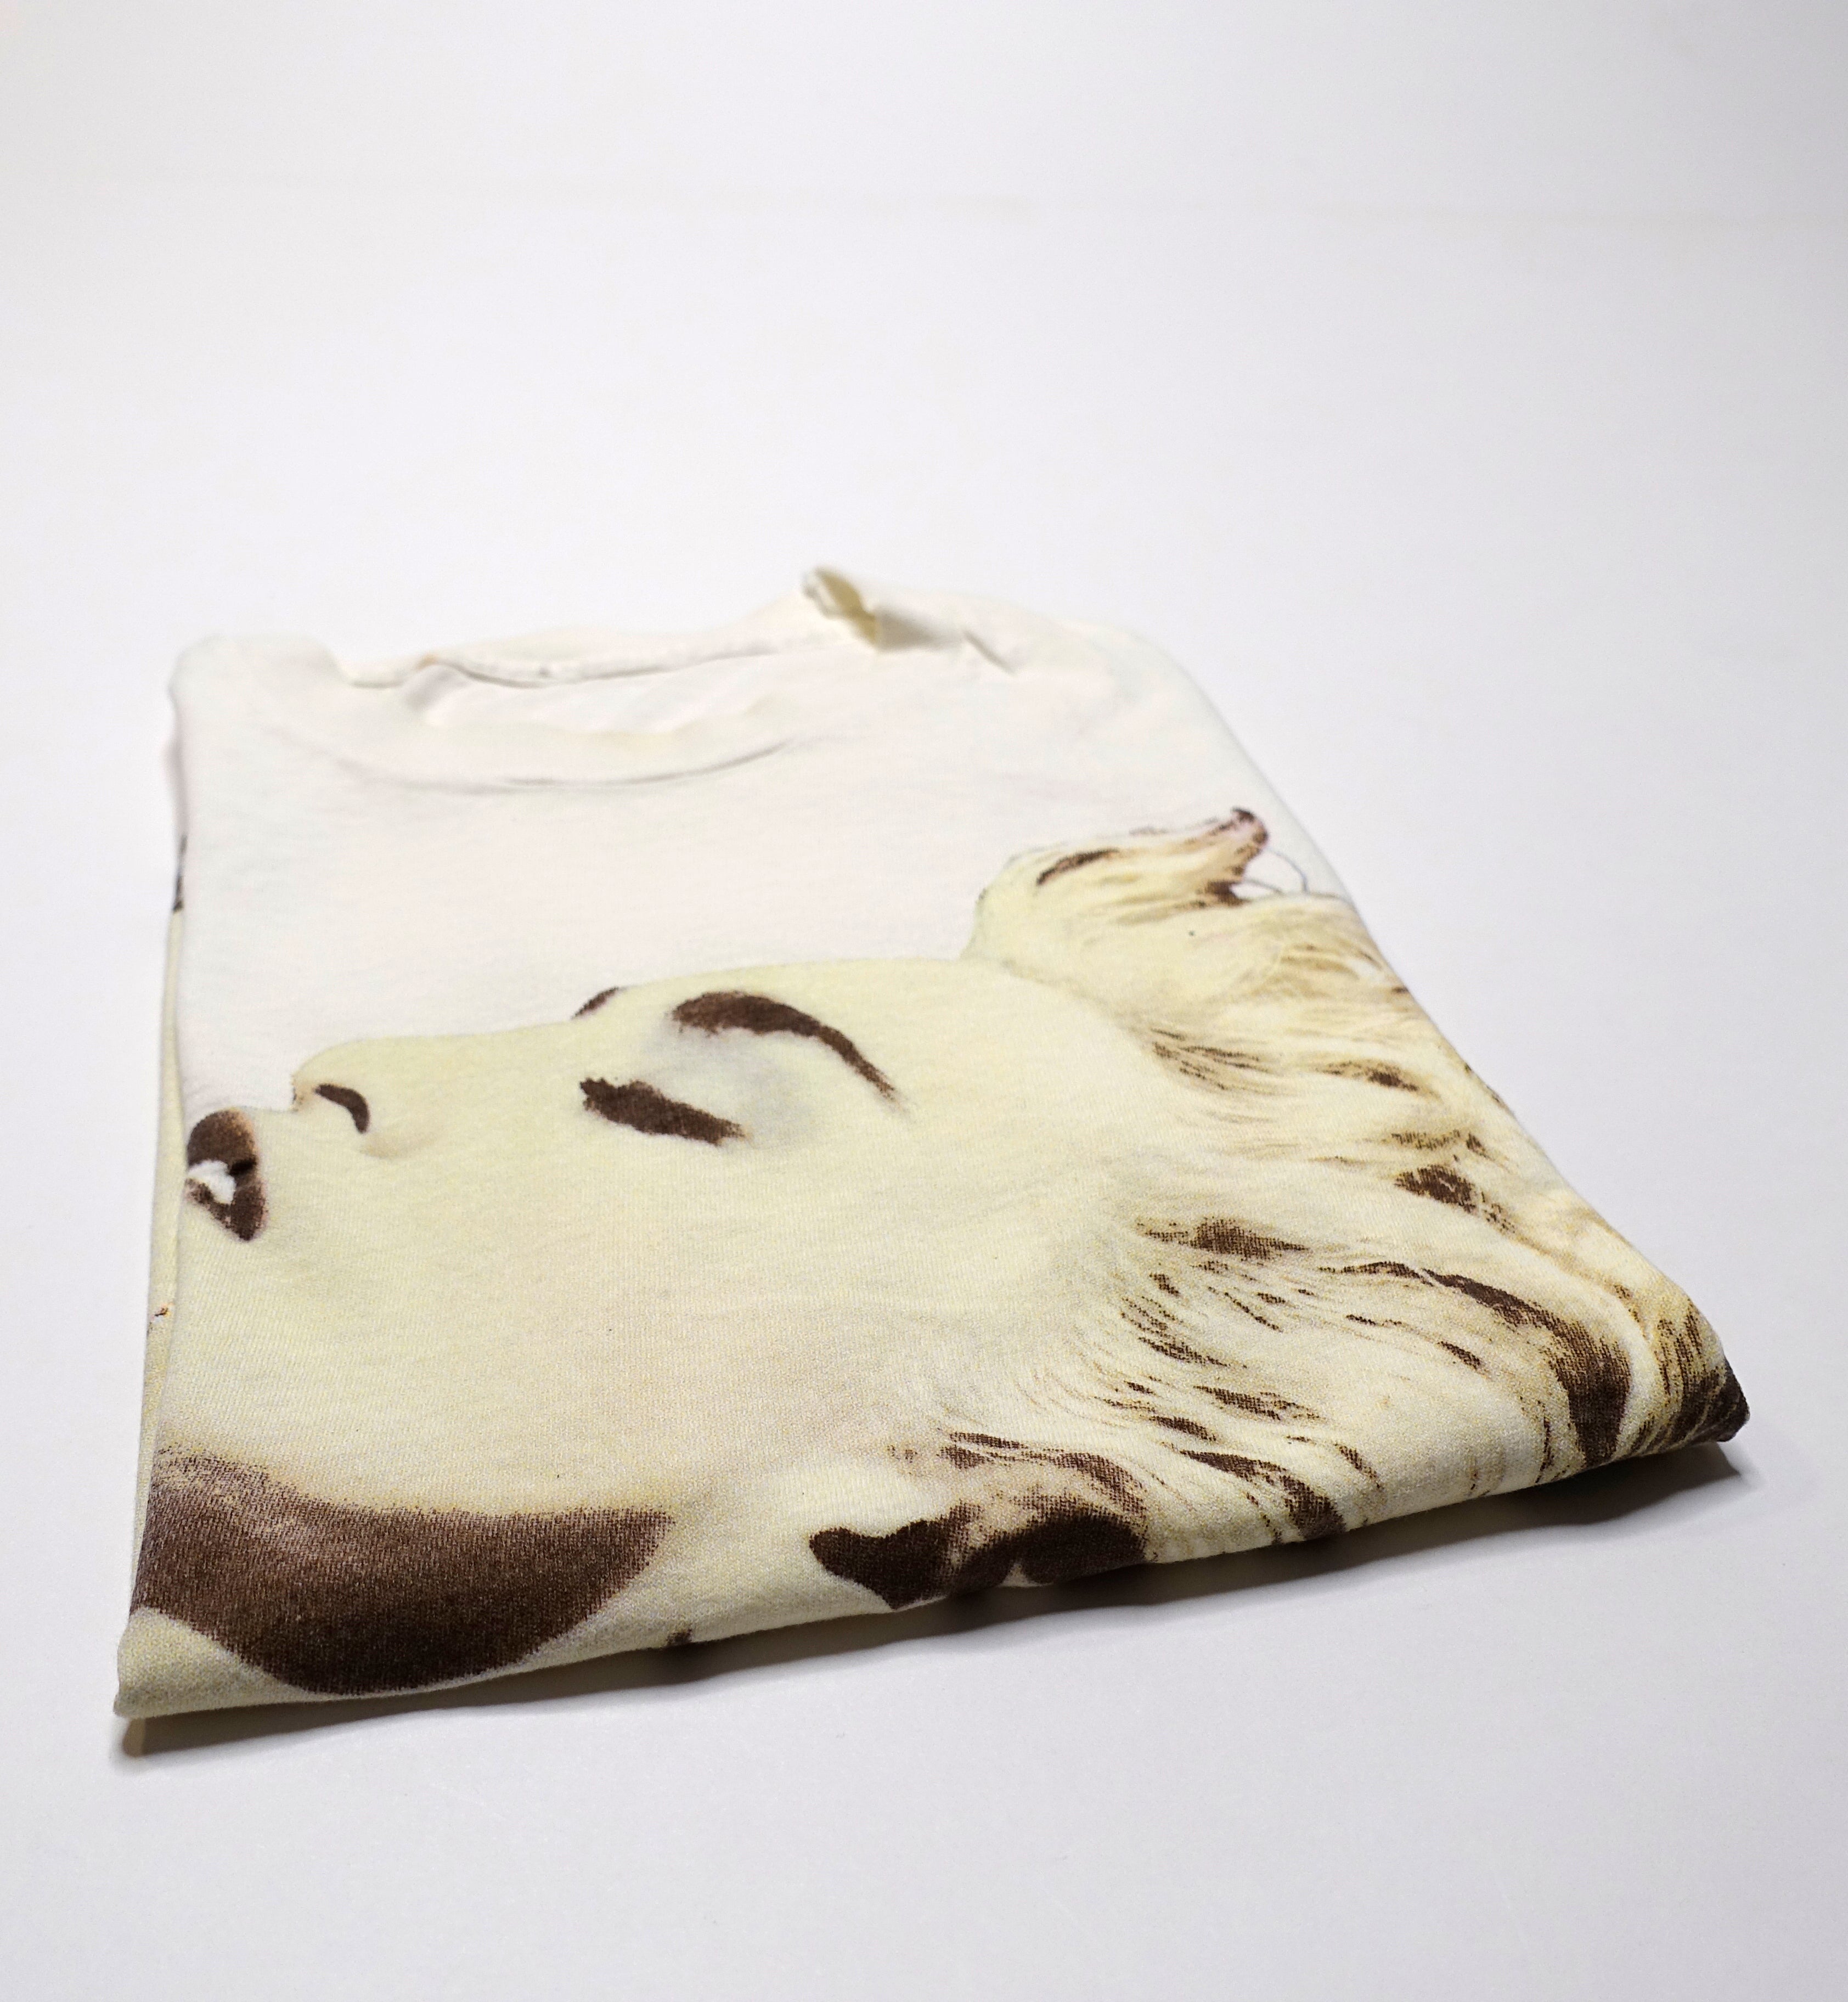 Madonna ‎– True Blue 1986 Tour Shirt Size XXL / XL